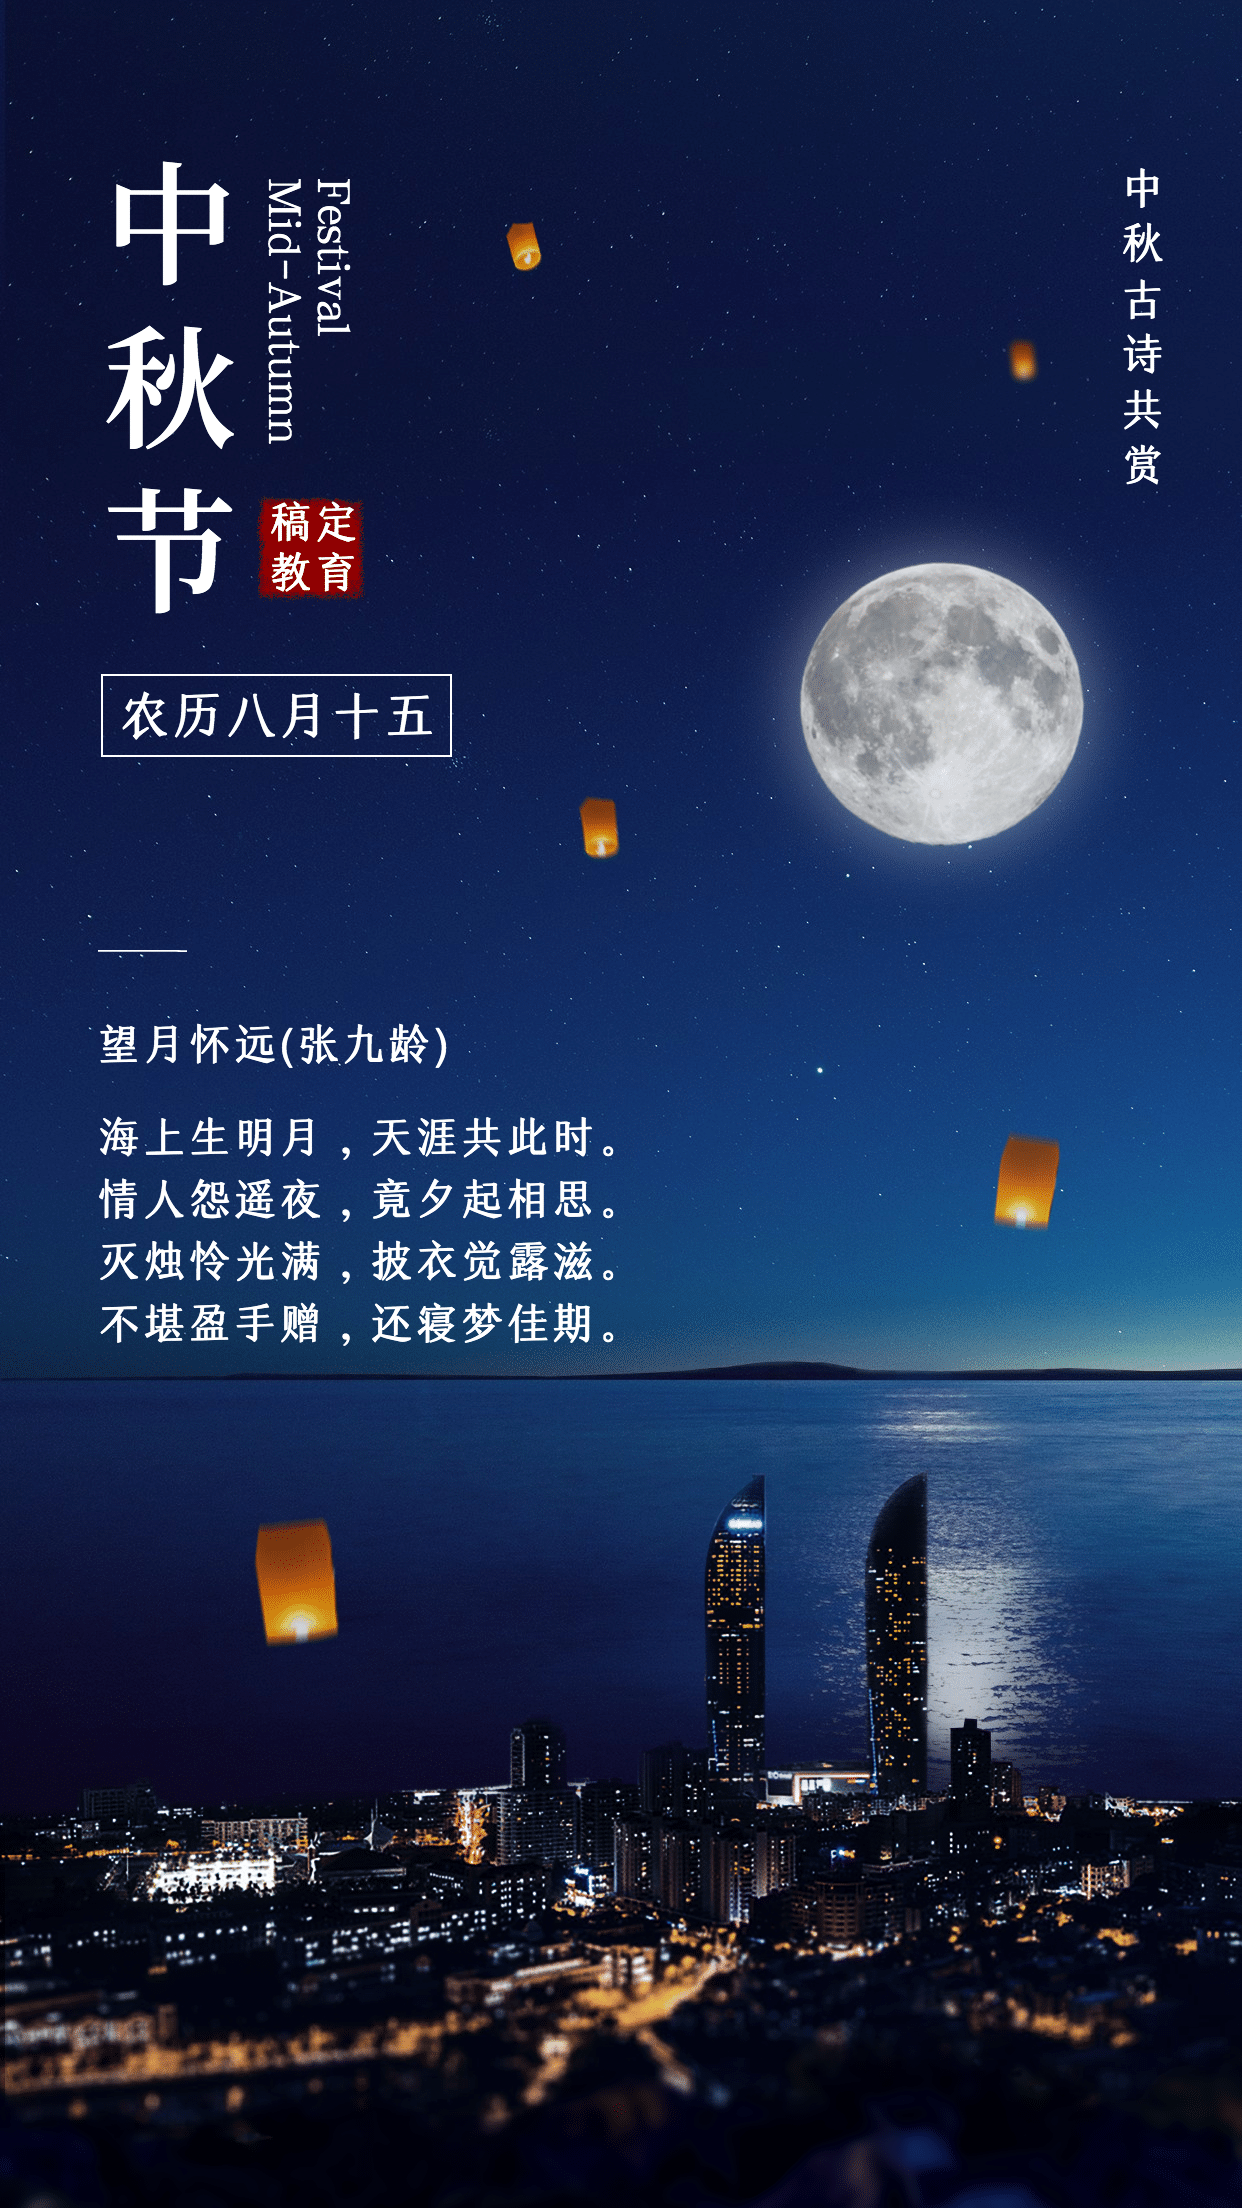 中秋节祝福经典诗歌实景合成海报